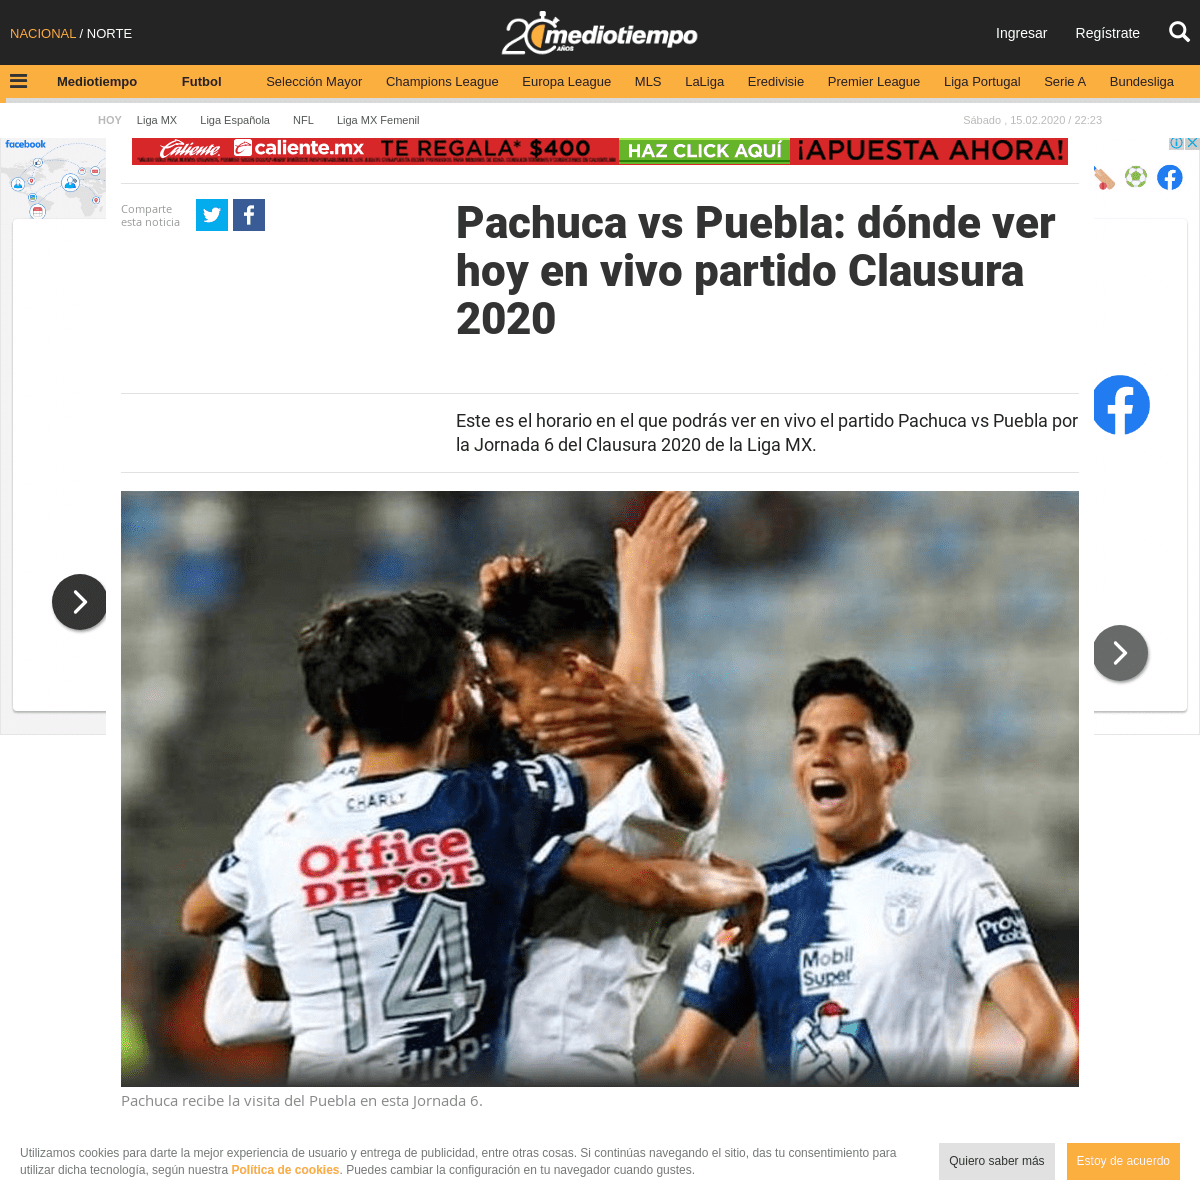 A complete backup of www.mediotiempo.com/futbol/liga-mx/pachuca-vs-puebla-vivo-partido-clausura-2020